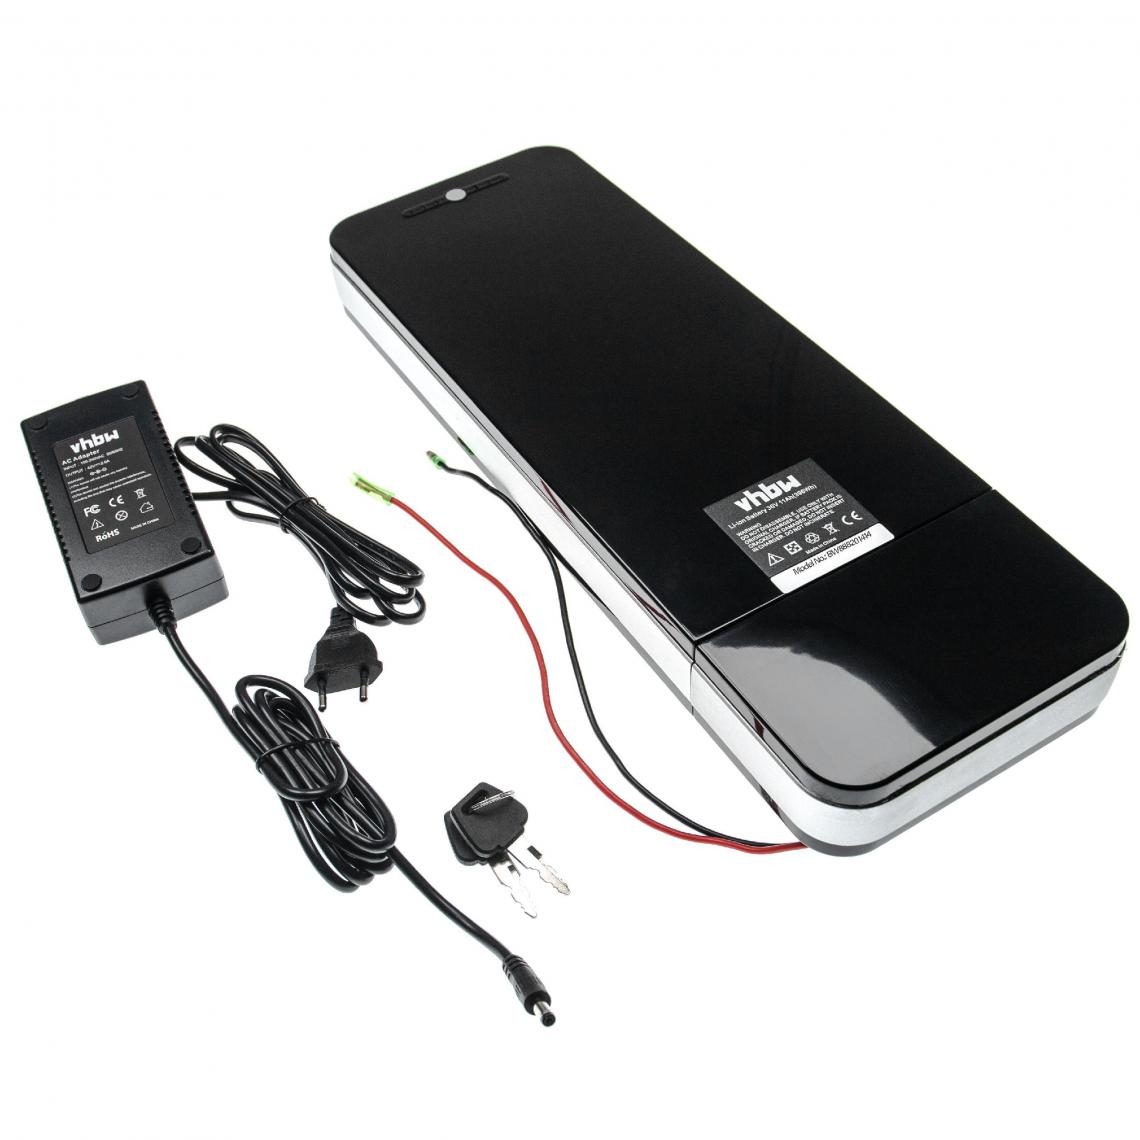 Vhbw - vhbw Batterie électrique - porte bagage 11Ah 36V Li-Ion chargeur inclus + port USB compatible avec divers E-Bikes, vélos électriques - Type 1 - Vélo électrique